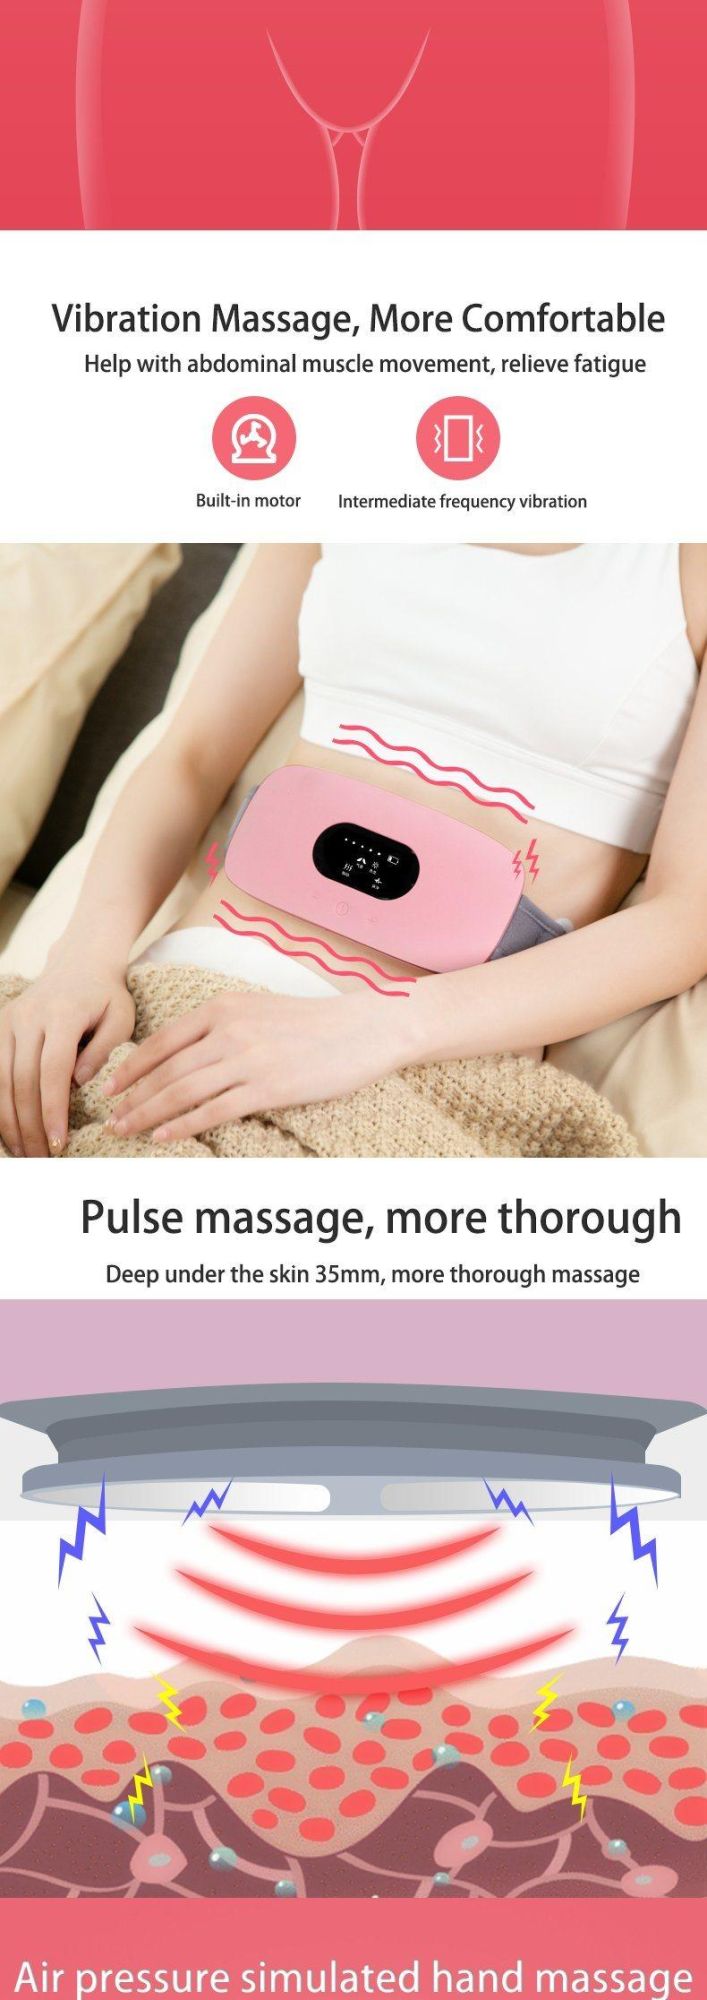 Hezheng Electric Weight Loss Belly Abdomen Massager